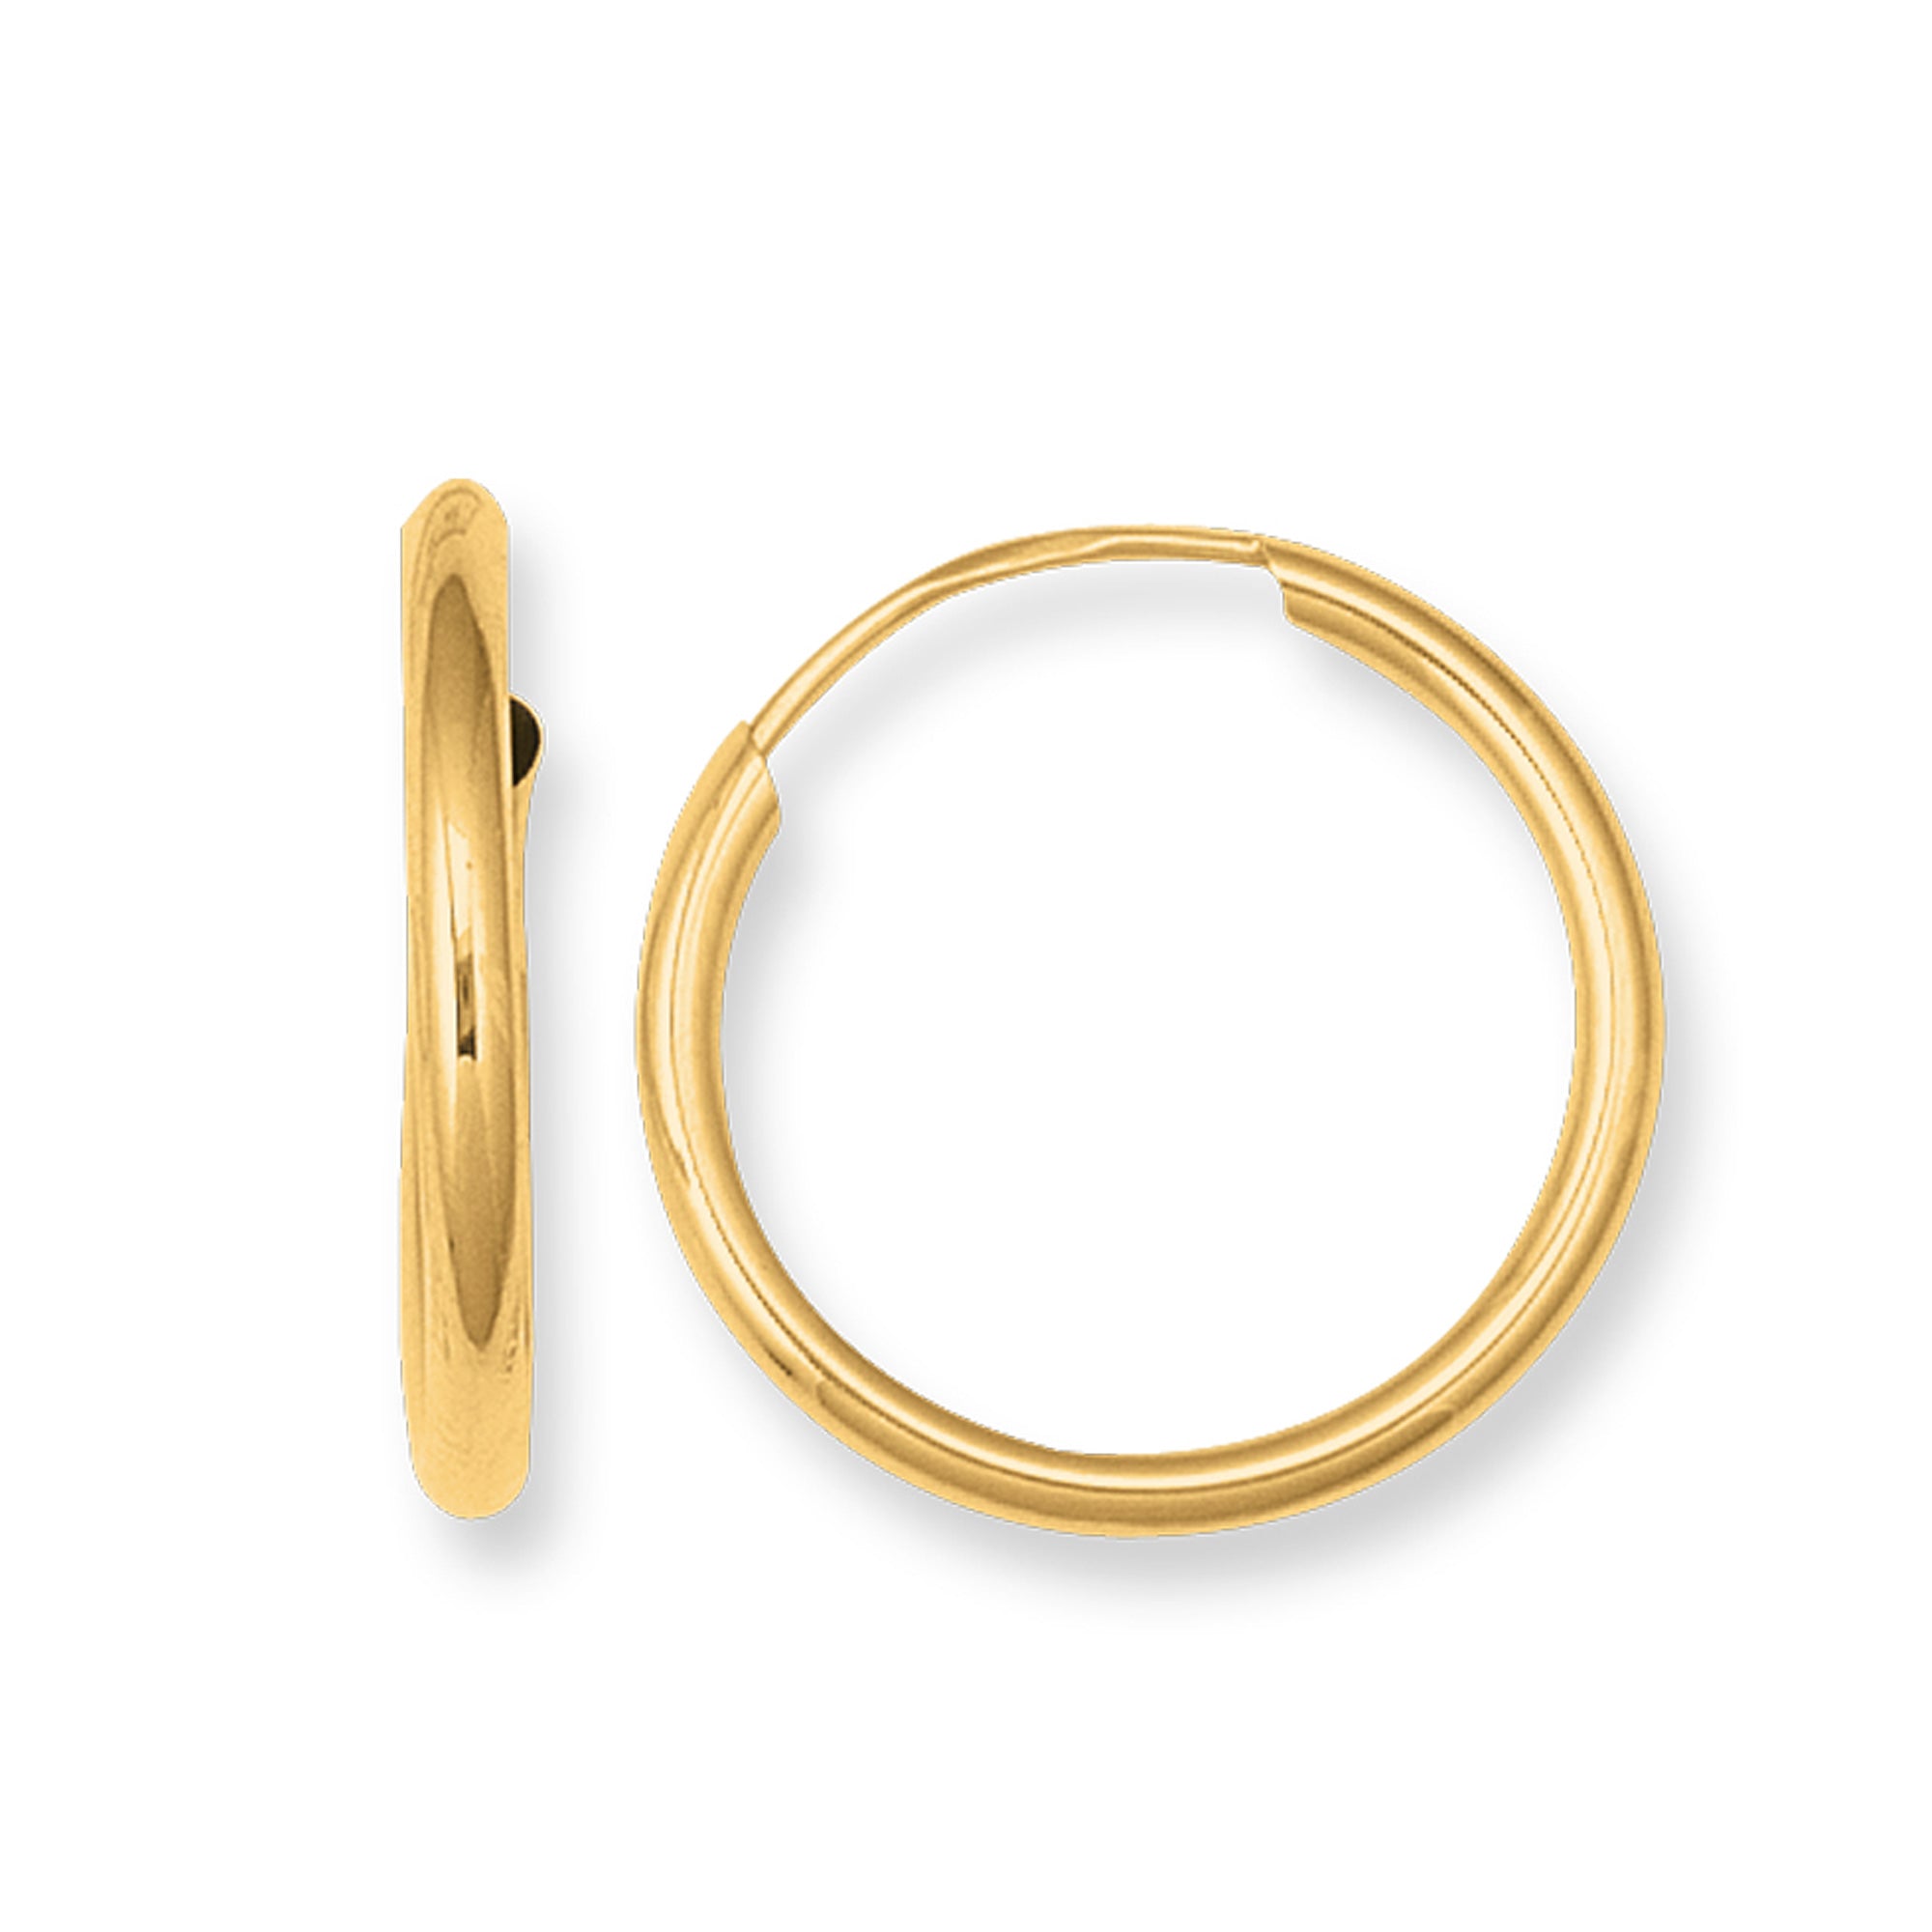 10 k gul guld skinnende endeløse runde bøjle øreringe fine designer smykker til mænd og kvinder